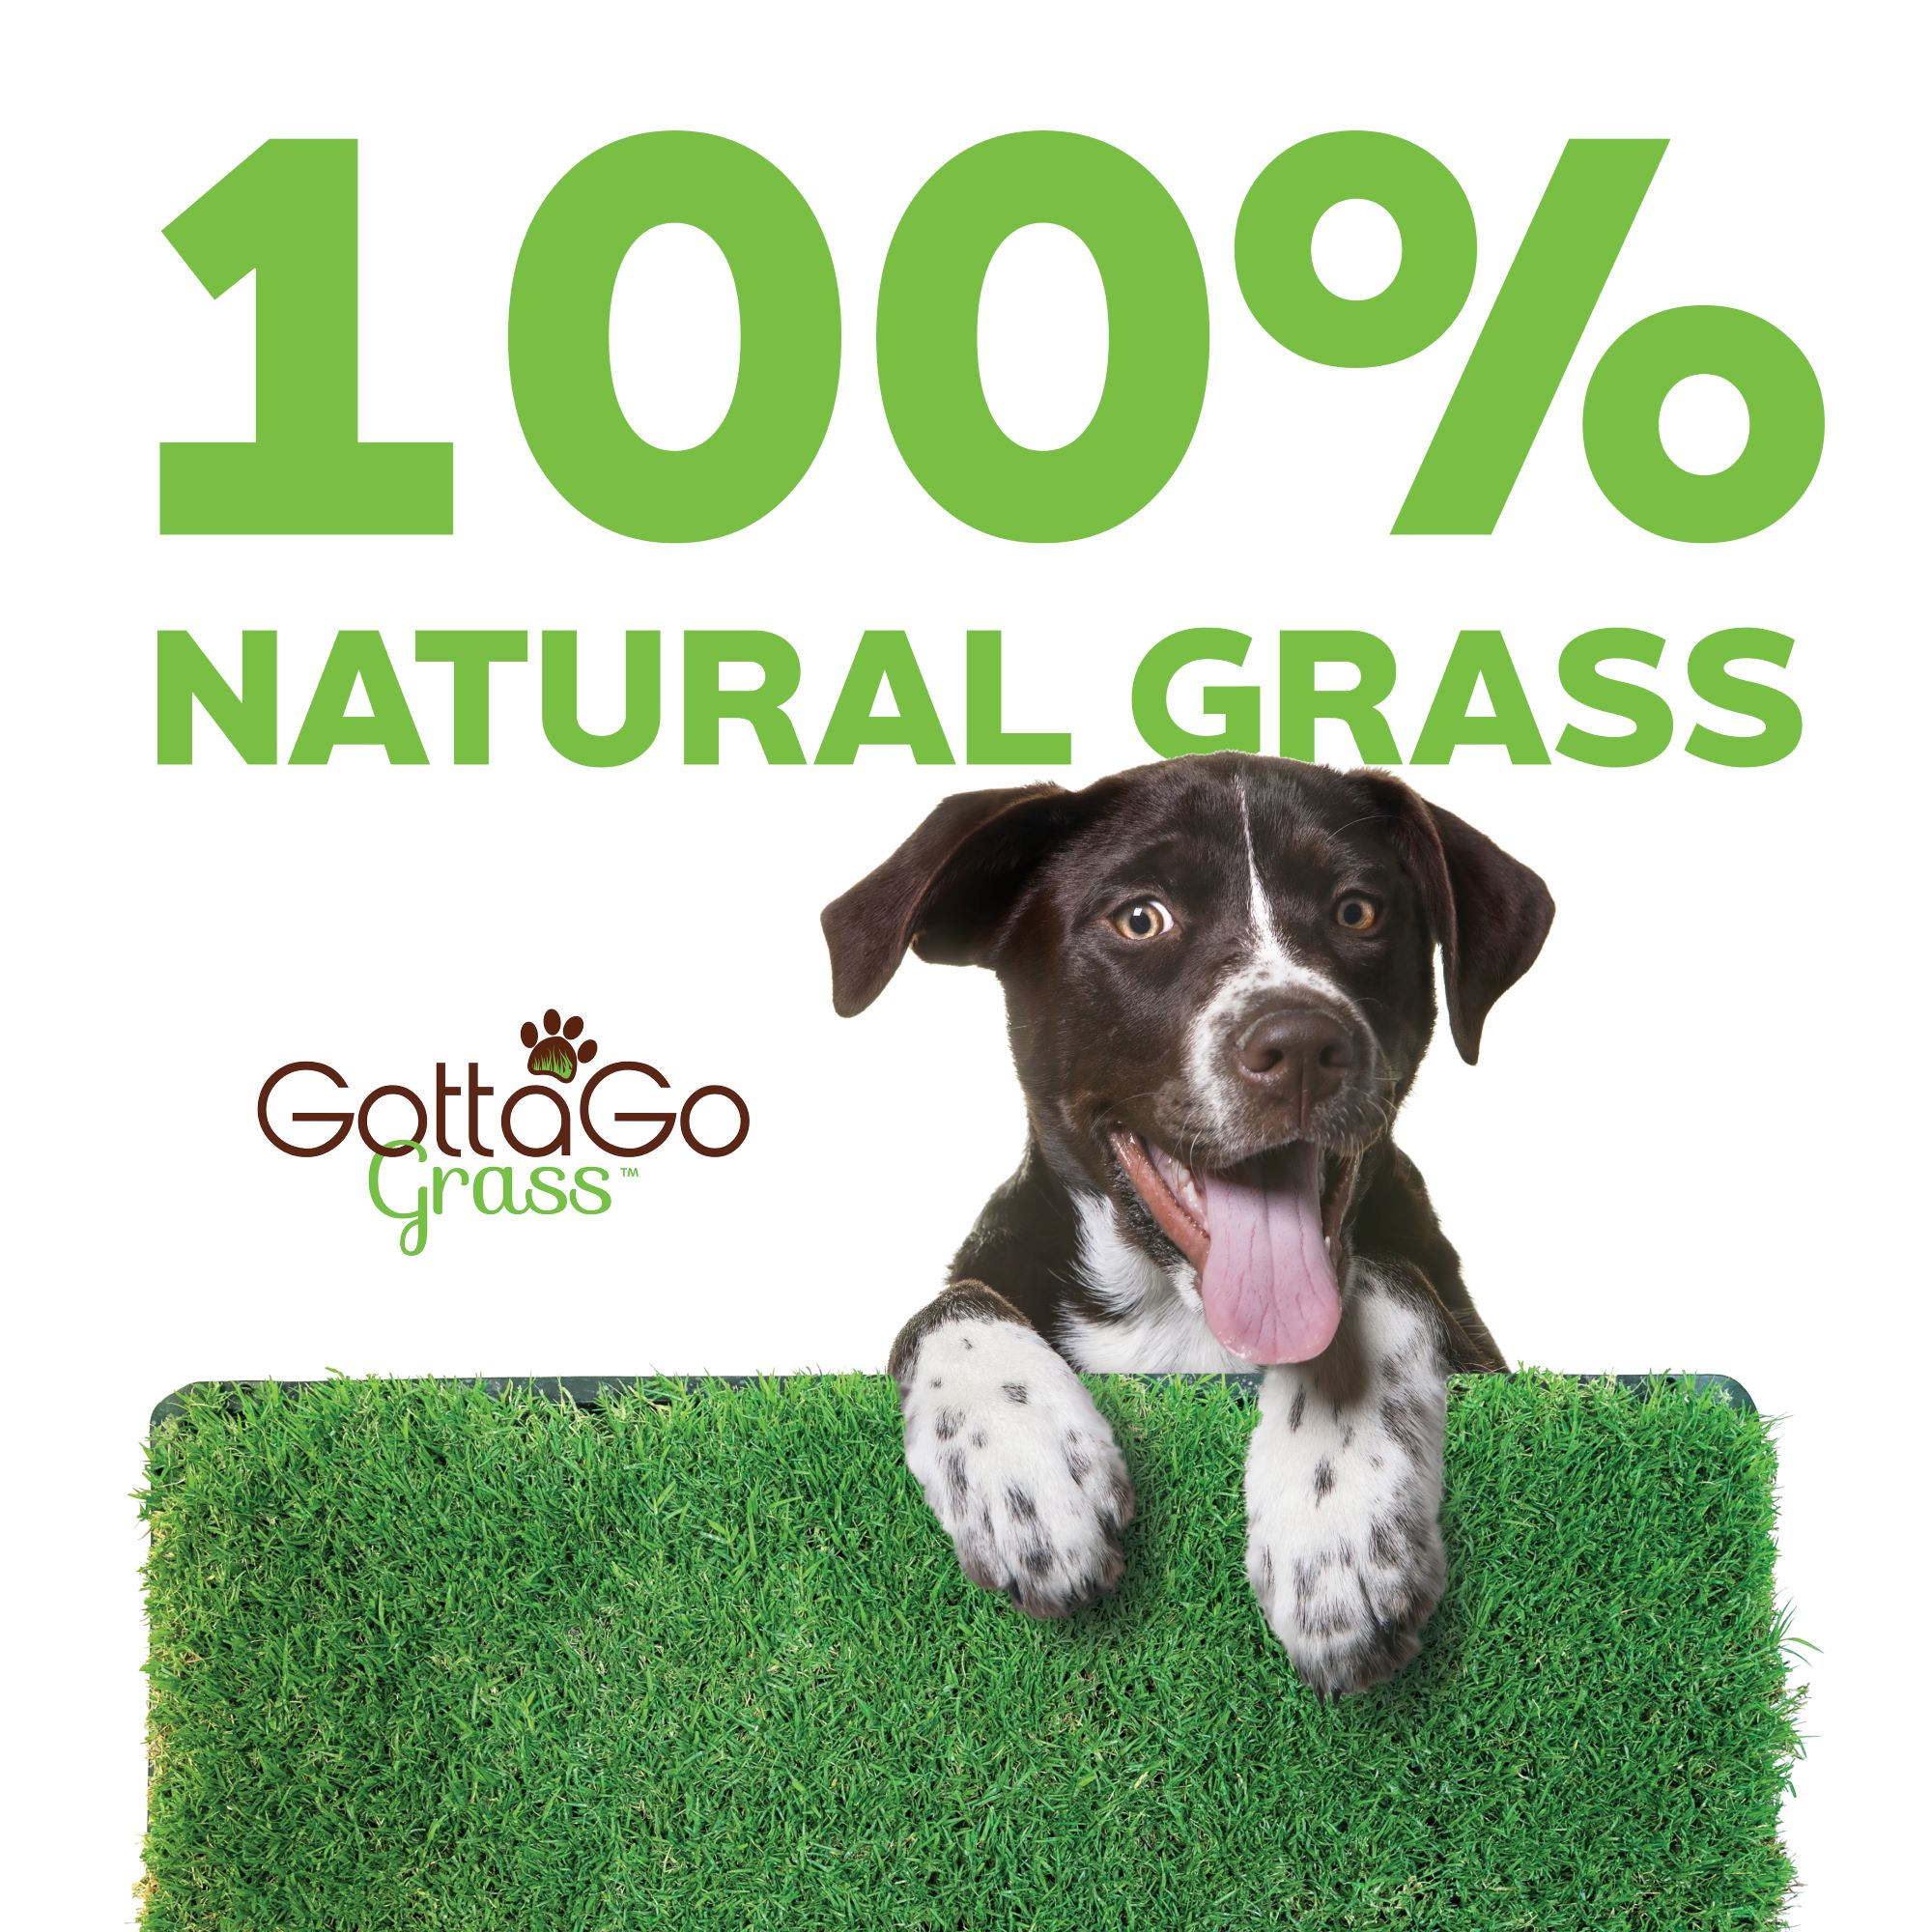 Gotta Go Grass: 100% Natural